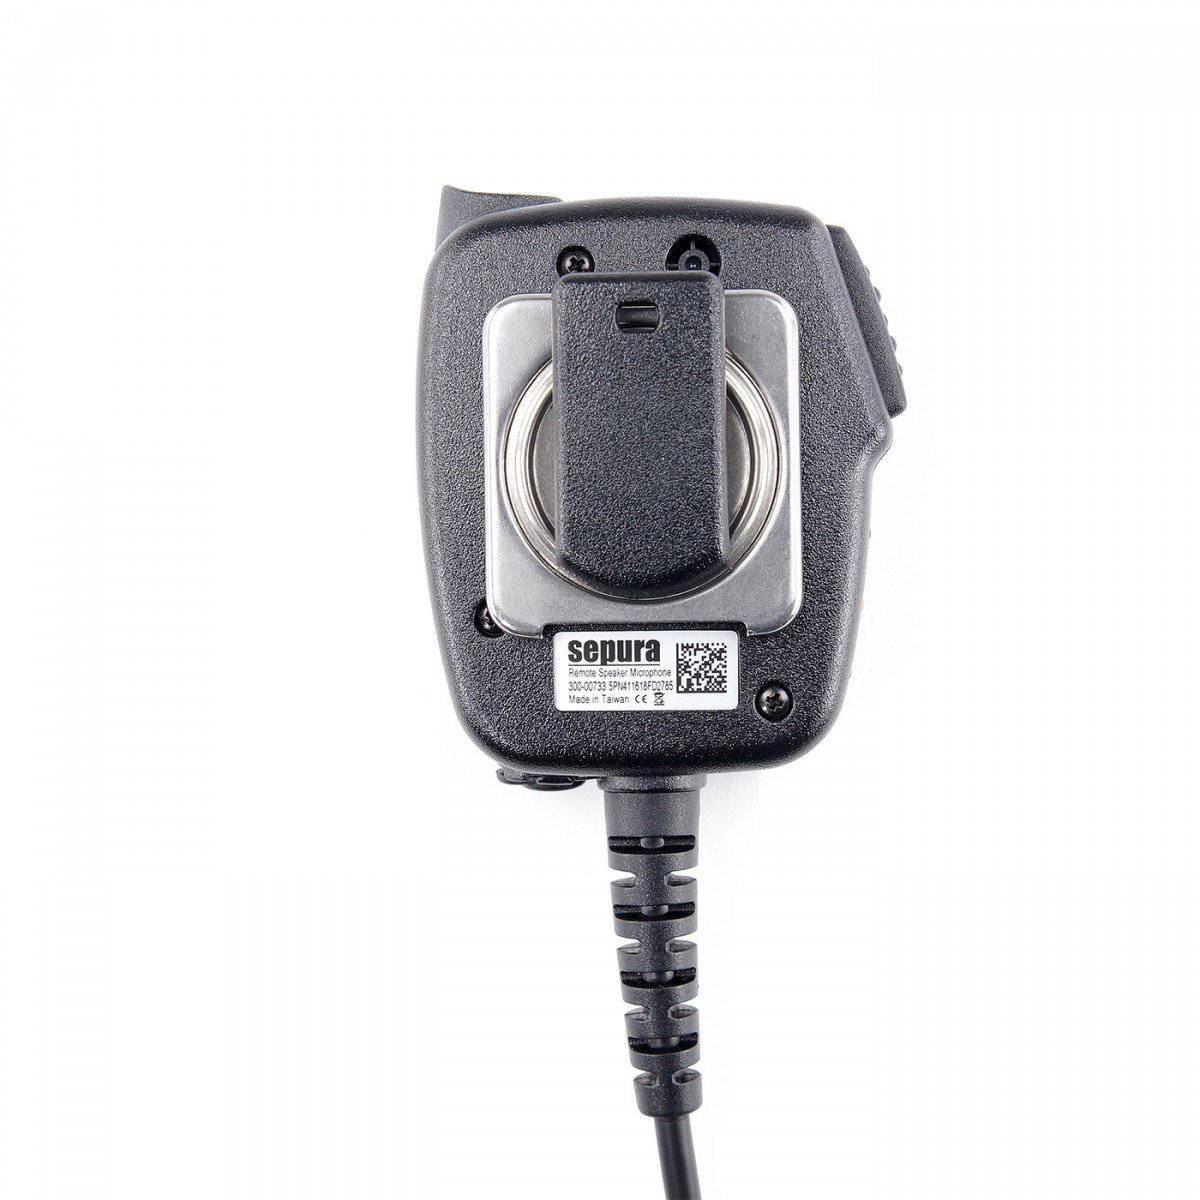 SEPURA Lautsprecher-Mikrofon mit 3 Funktionstasten, für STP8/9000, SC20, SC21, 37cm Kabel 300-00734